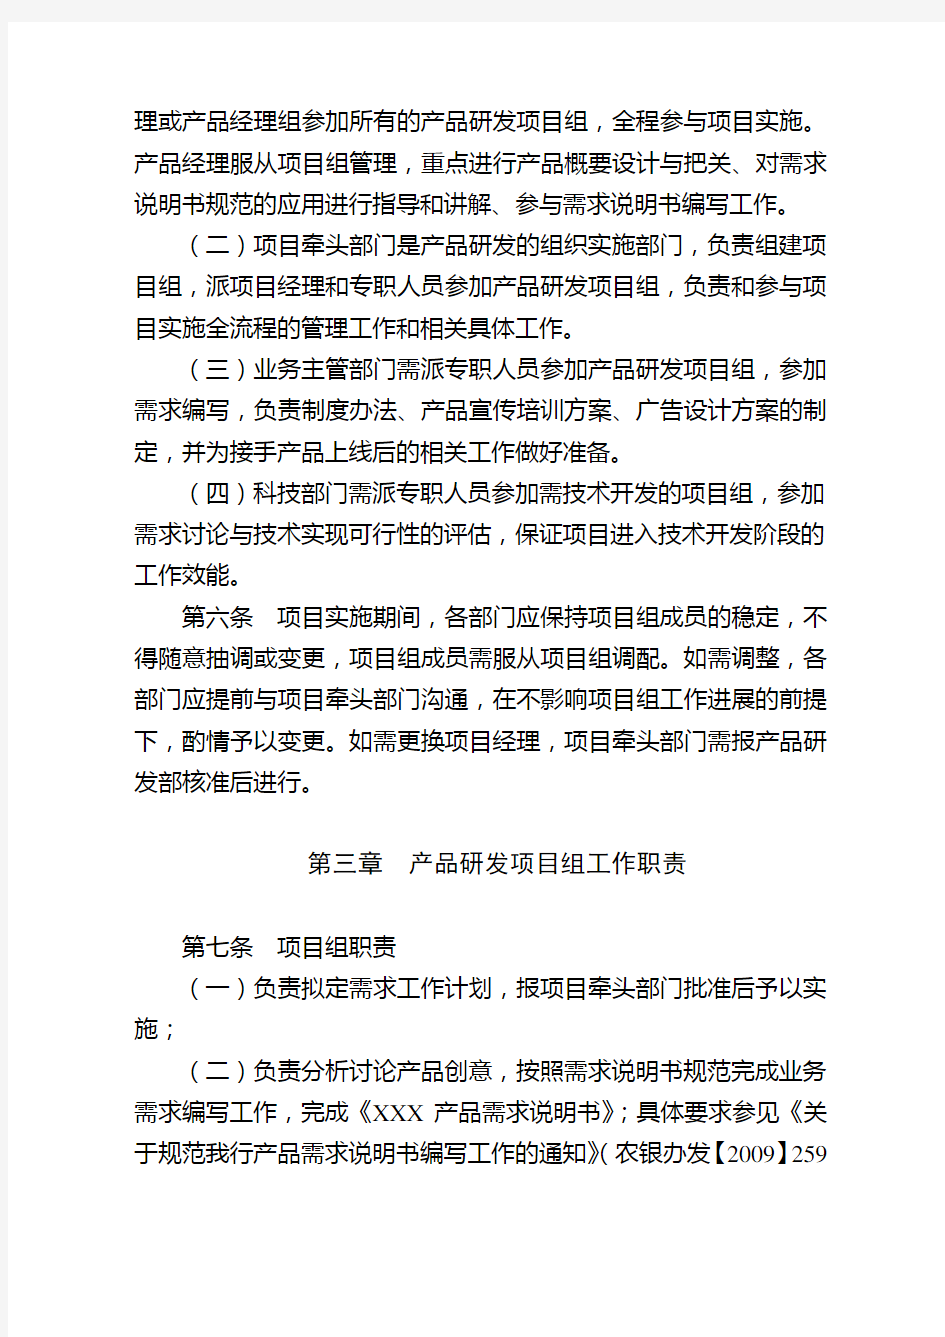 中国农业银行产品研发项目组管理细则